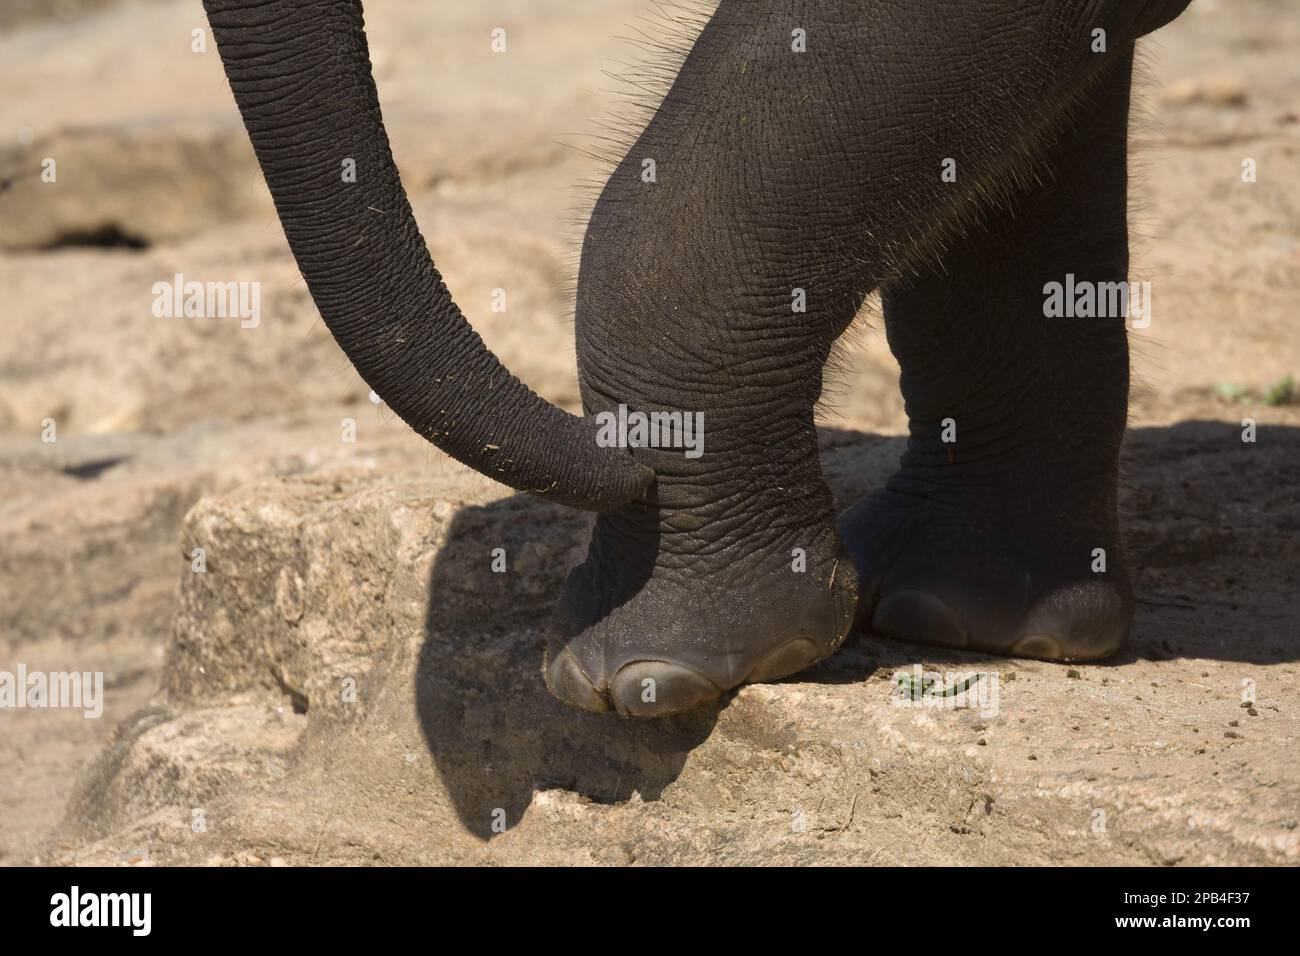 Asiatischer Elefant, indischer Elefant, asiatische Elefanten, indische Elefanten, Elefanten, Säugetiere, Tiere, Rumpffuss und Zehen eines jungen asiatischen Elefanten Stockfoto